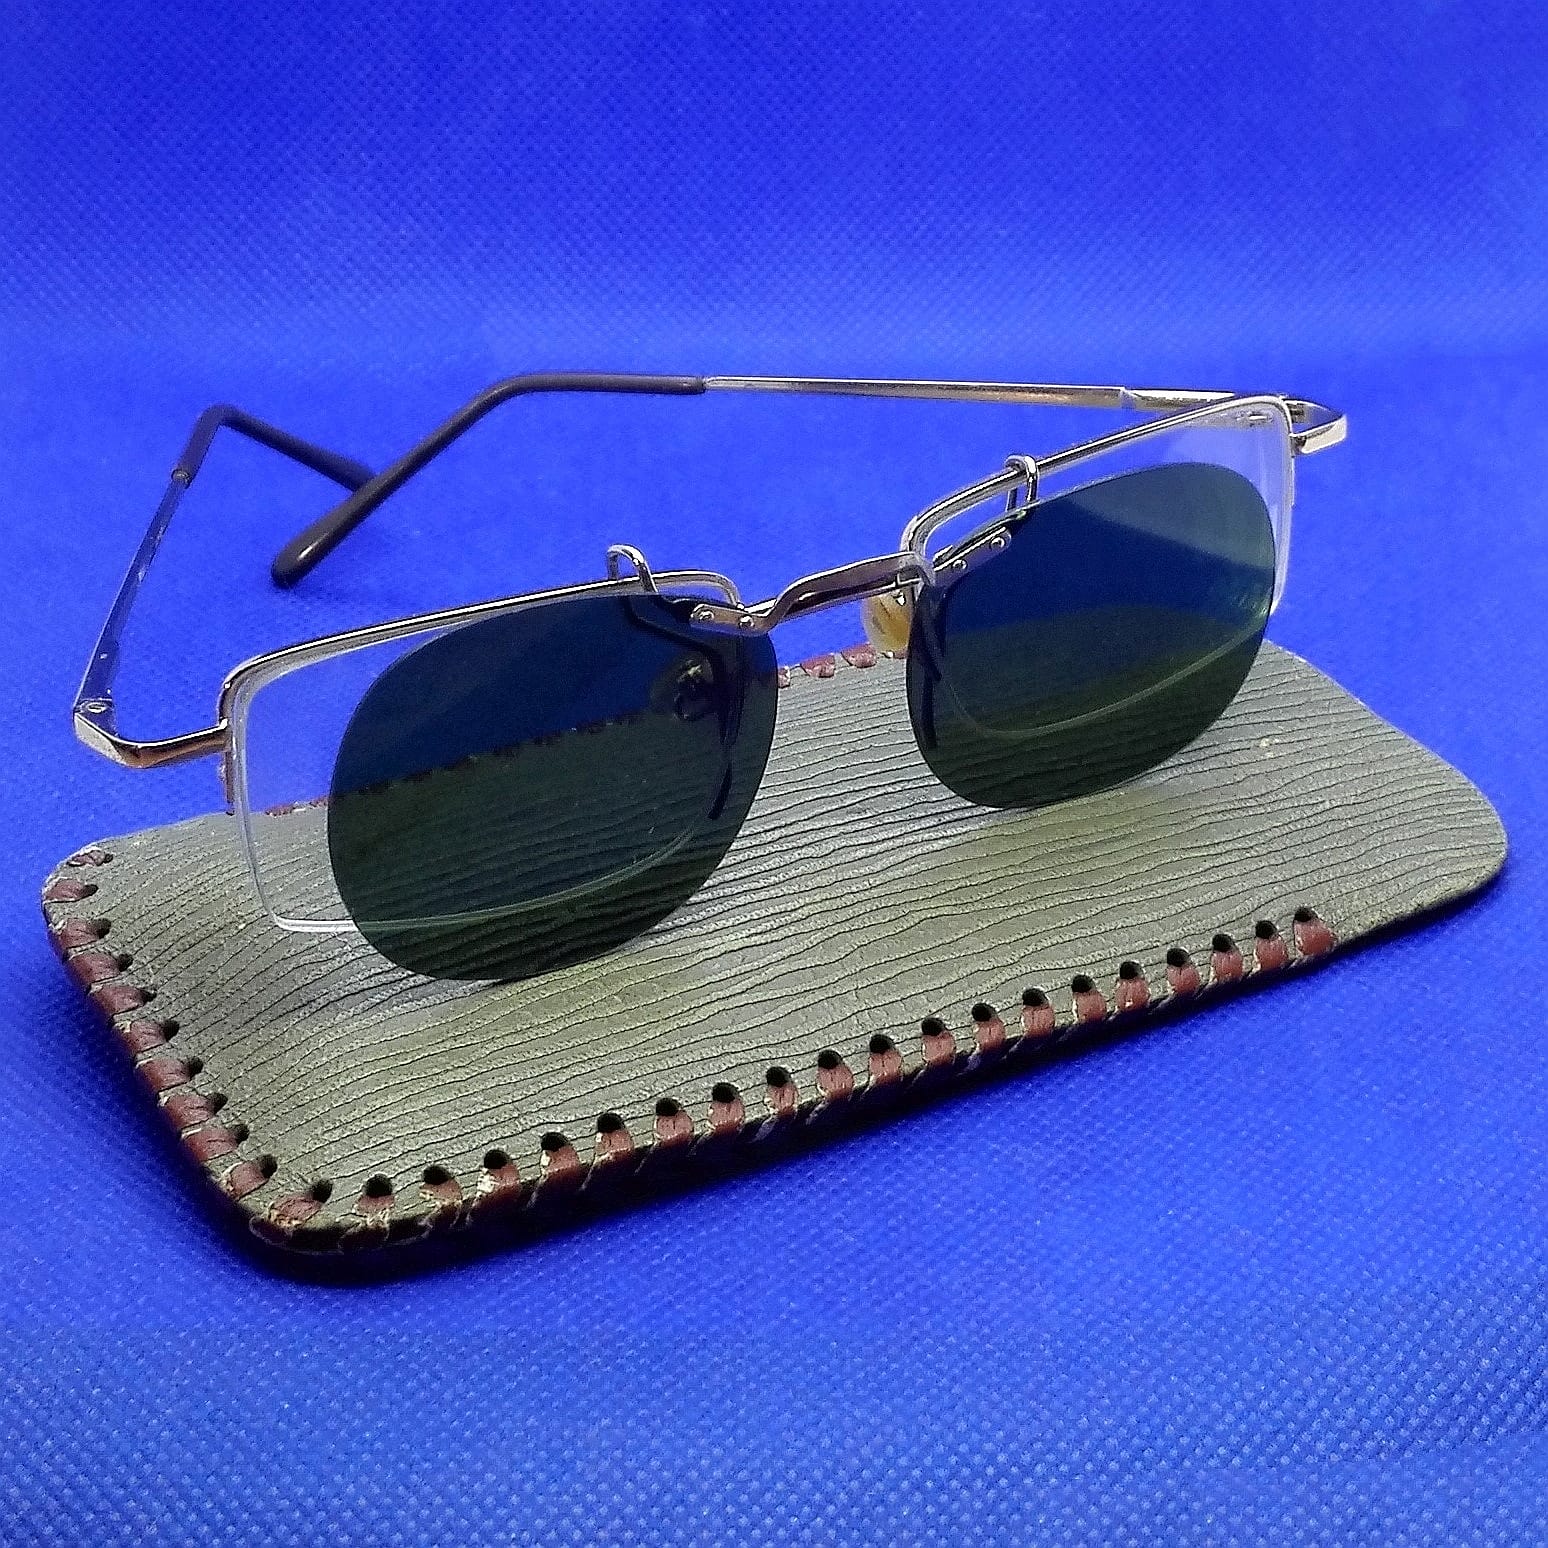 Antique spectacles/ glasses: pince nez